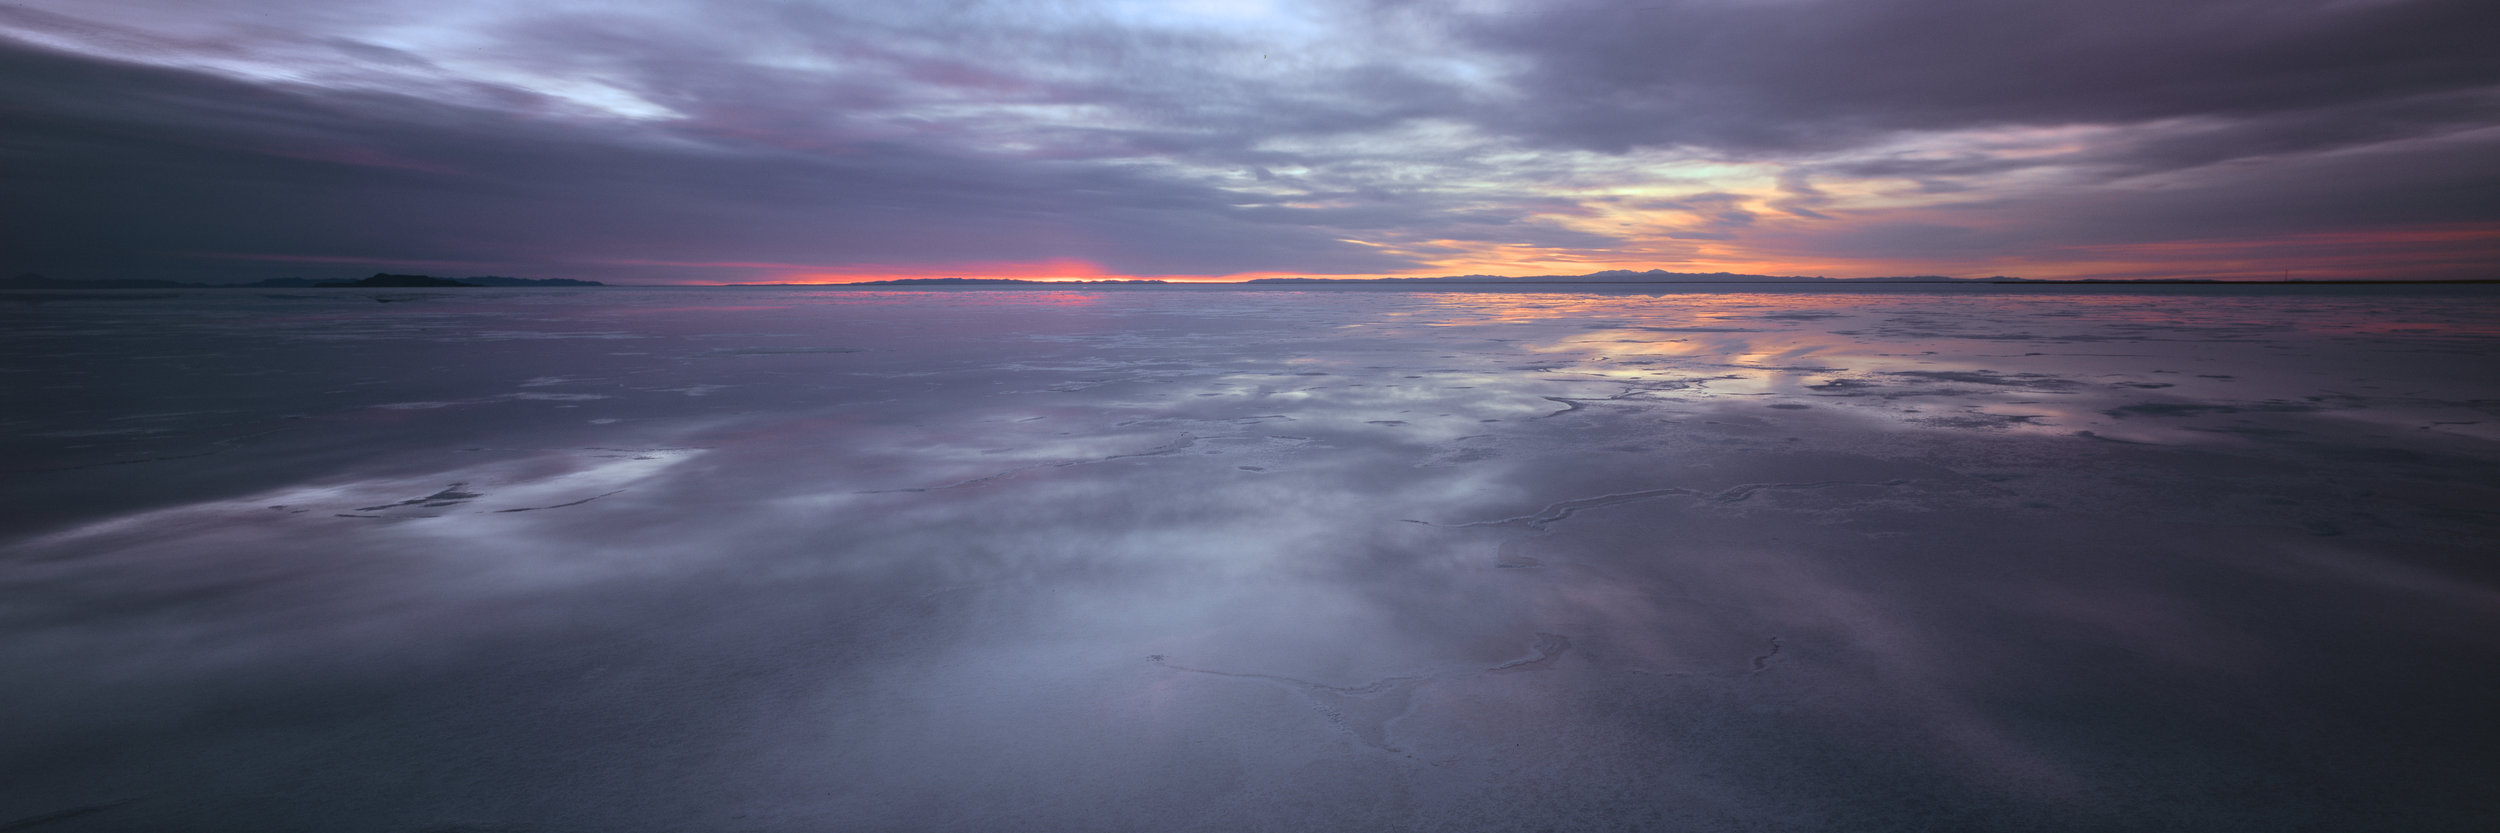  Bonneville salt flats at sunrise. Velvia 100, 2 sec, f/32. 